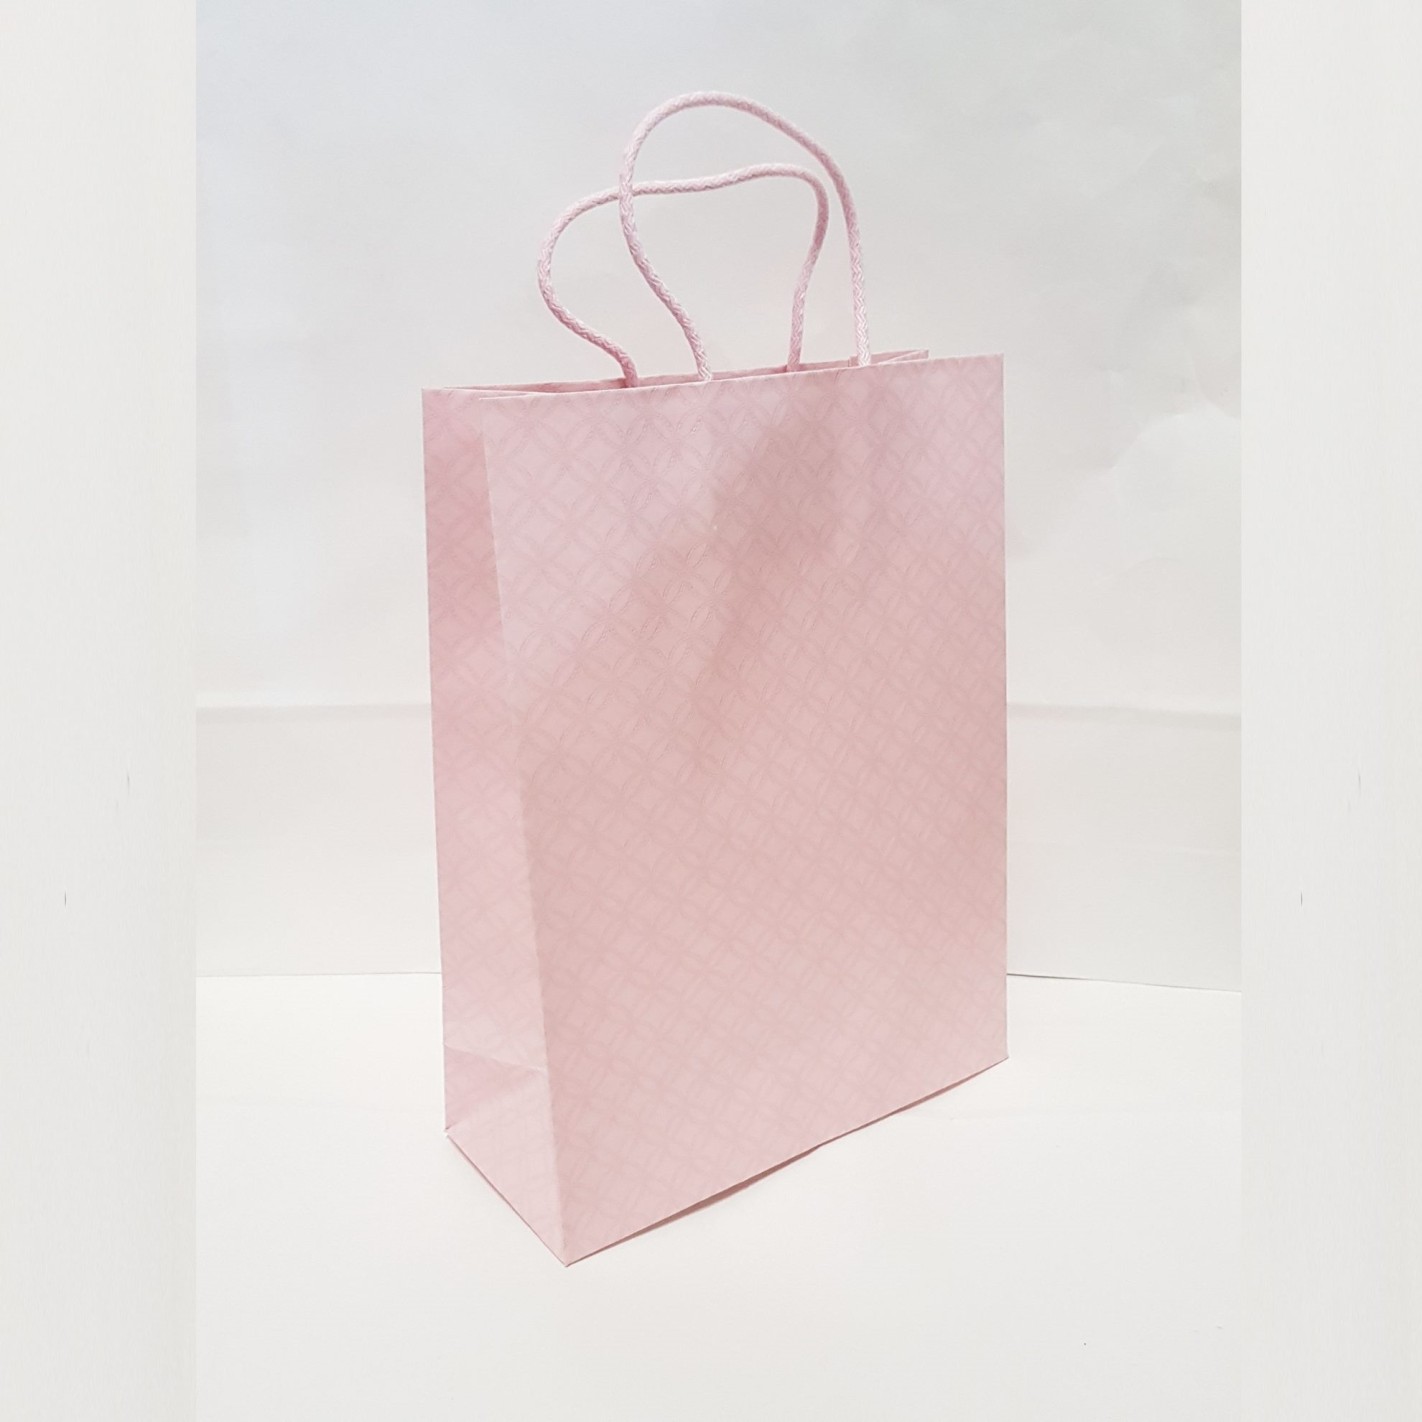 7 formati 100 pz/lotto grande sacchetto del OPP bambola giocattolo  trasparente sacchetto regalo supermercato sacchetti di imballaggio  promozionale fiore confezione di frutta